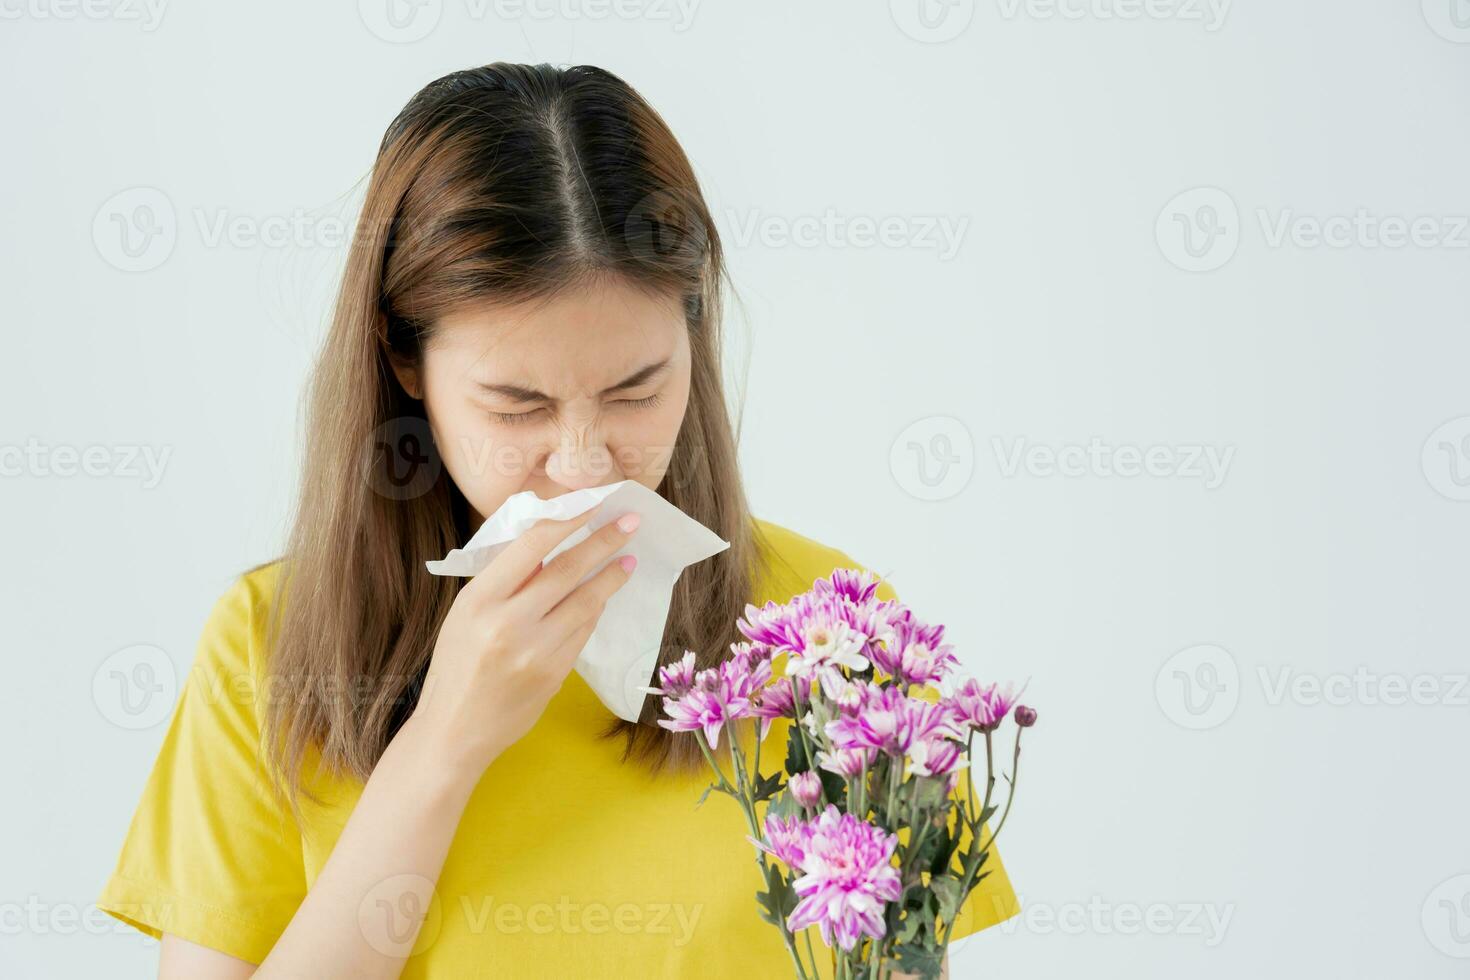 polen alergias, asiático joven mujer estornudos en un pañuelo o soplo en un limpiar, alérgico a salvaje primavera flores o flores durante primavera. alérgico reacción, respiratorio sistema problemas foto